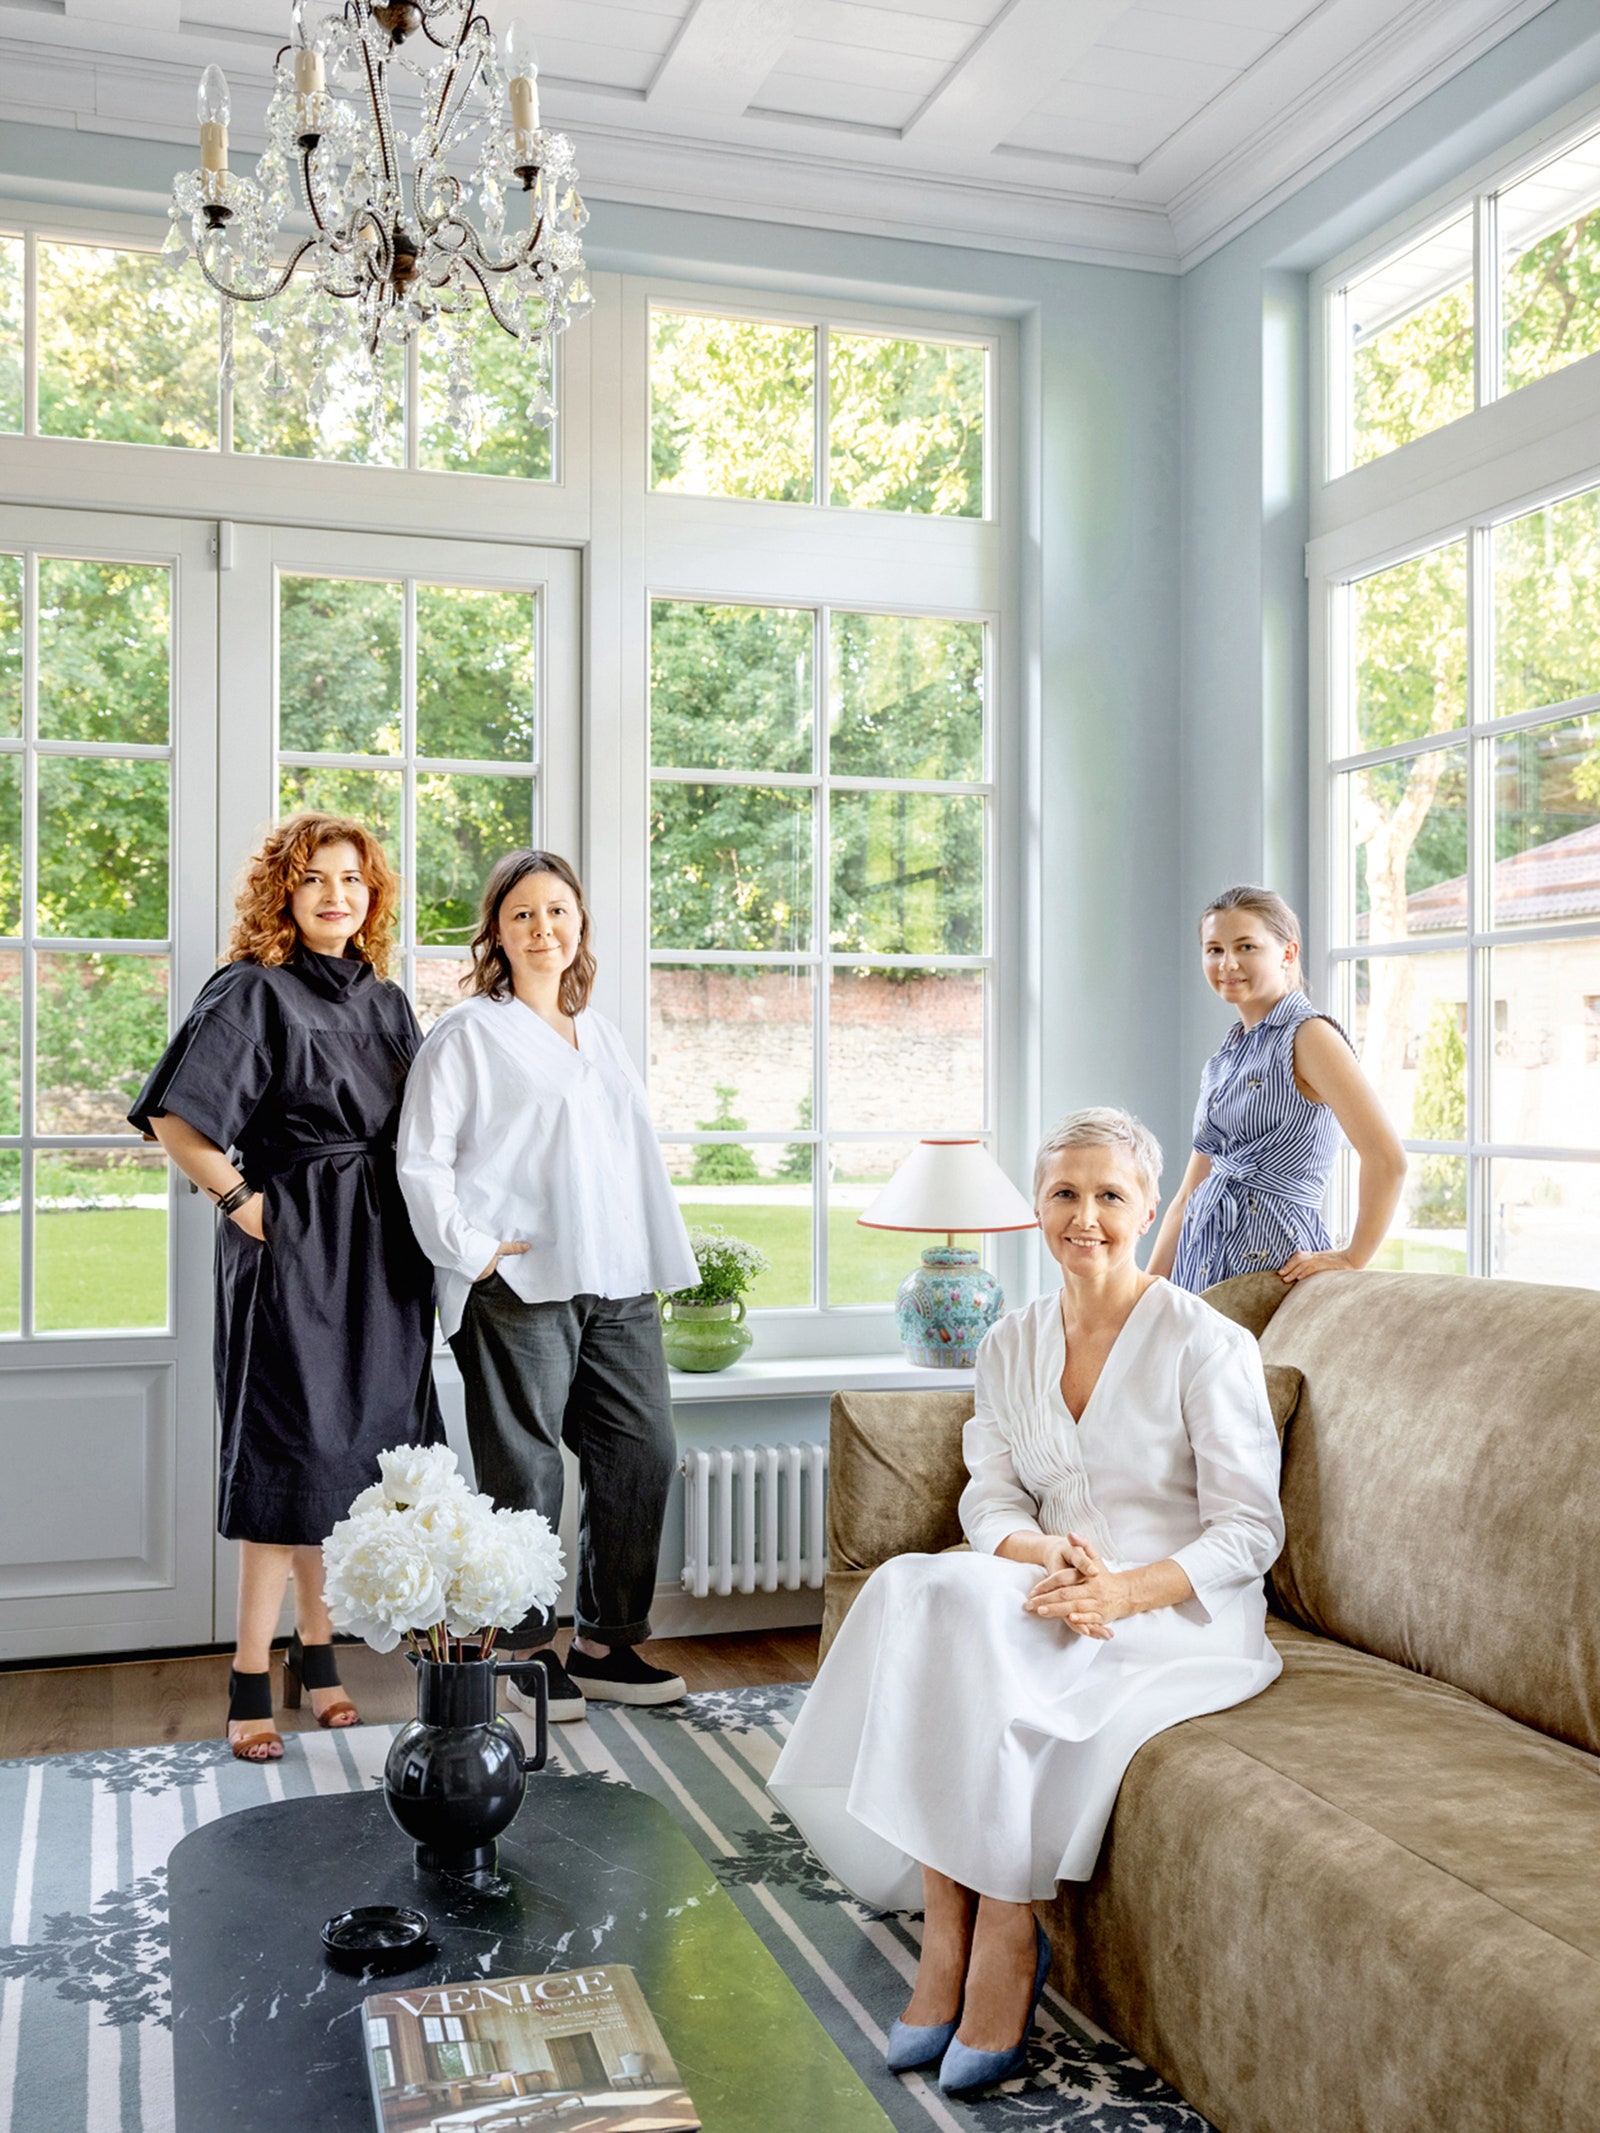 Слева направо дизайнеры Мия Карлова и Елена Зуфарова хозяйка дома Галина Полужникова и ее дочь Агнесса.